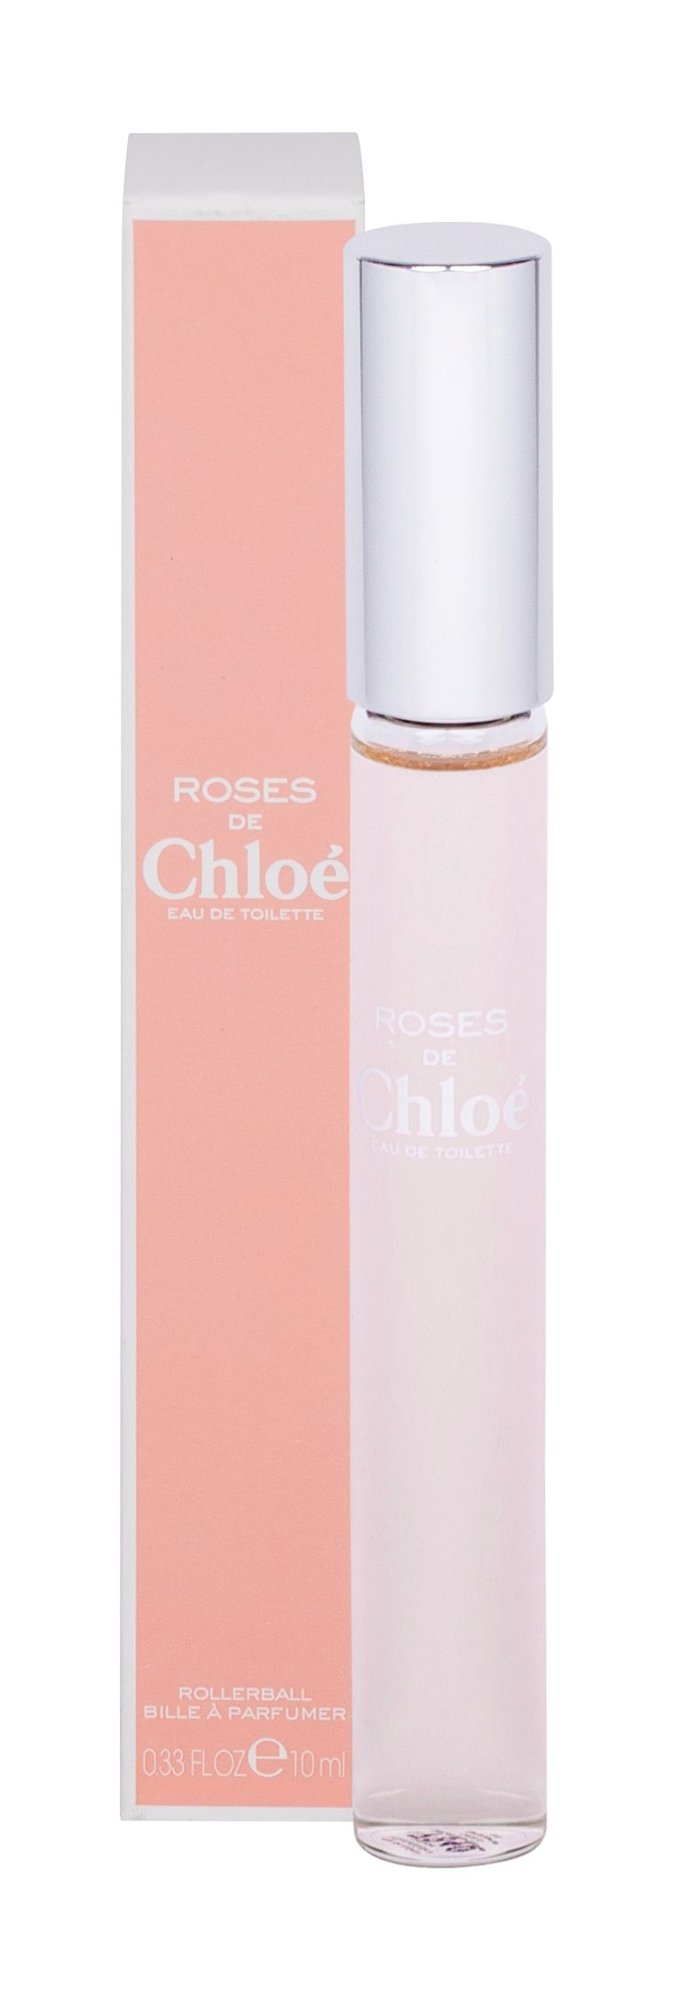 Chloé Roses De Chloe, edt 10ml, Rollerball